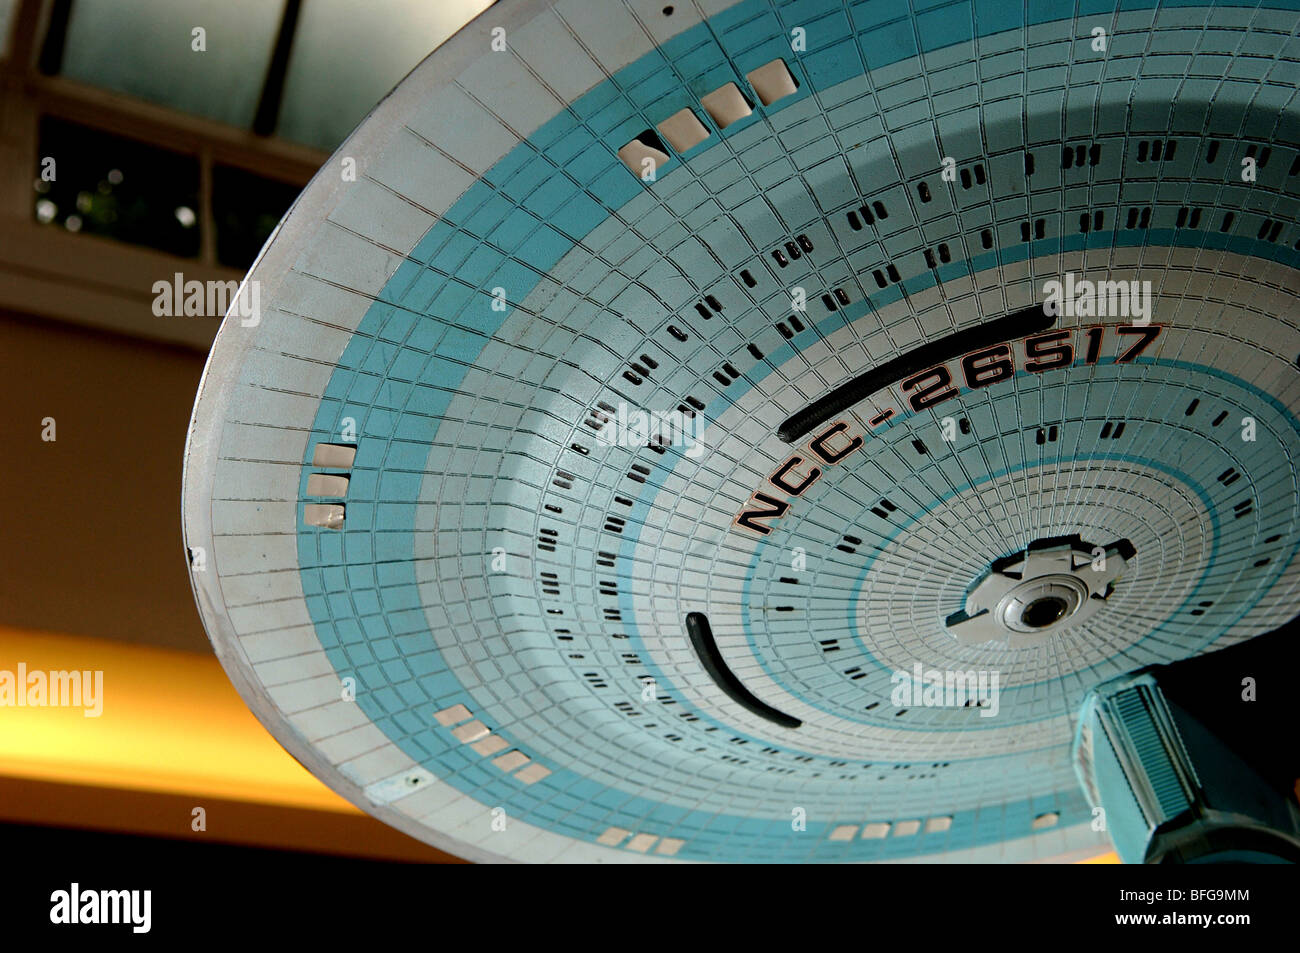 Ein Modell eines Raumschiffs, wie in der US-Science Fiction-Serie Star Trek: The Next Generation. Stockfoto